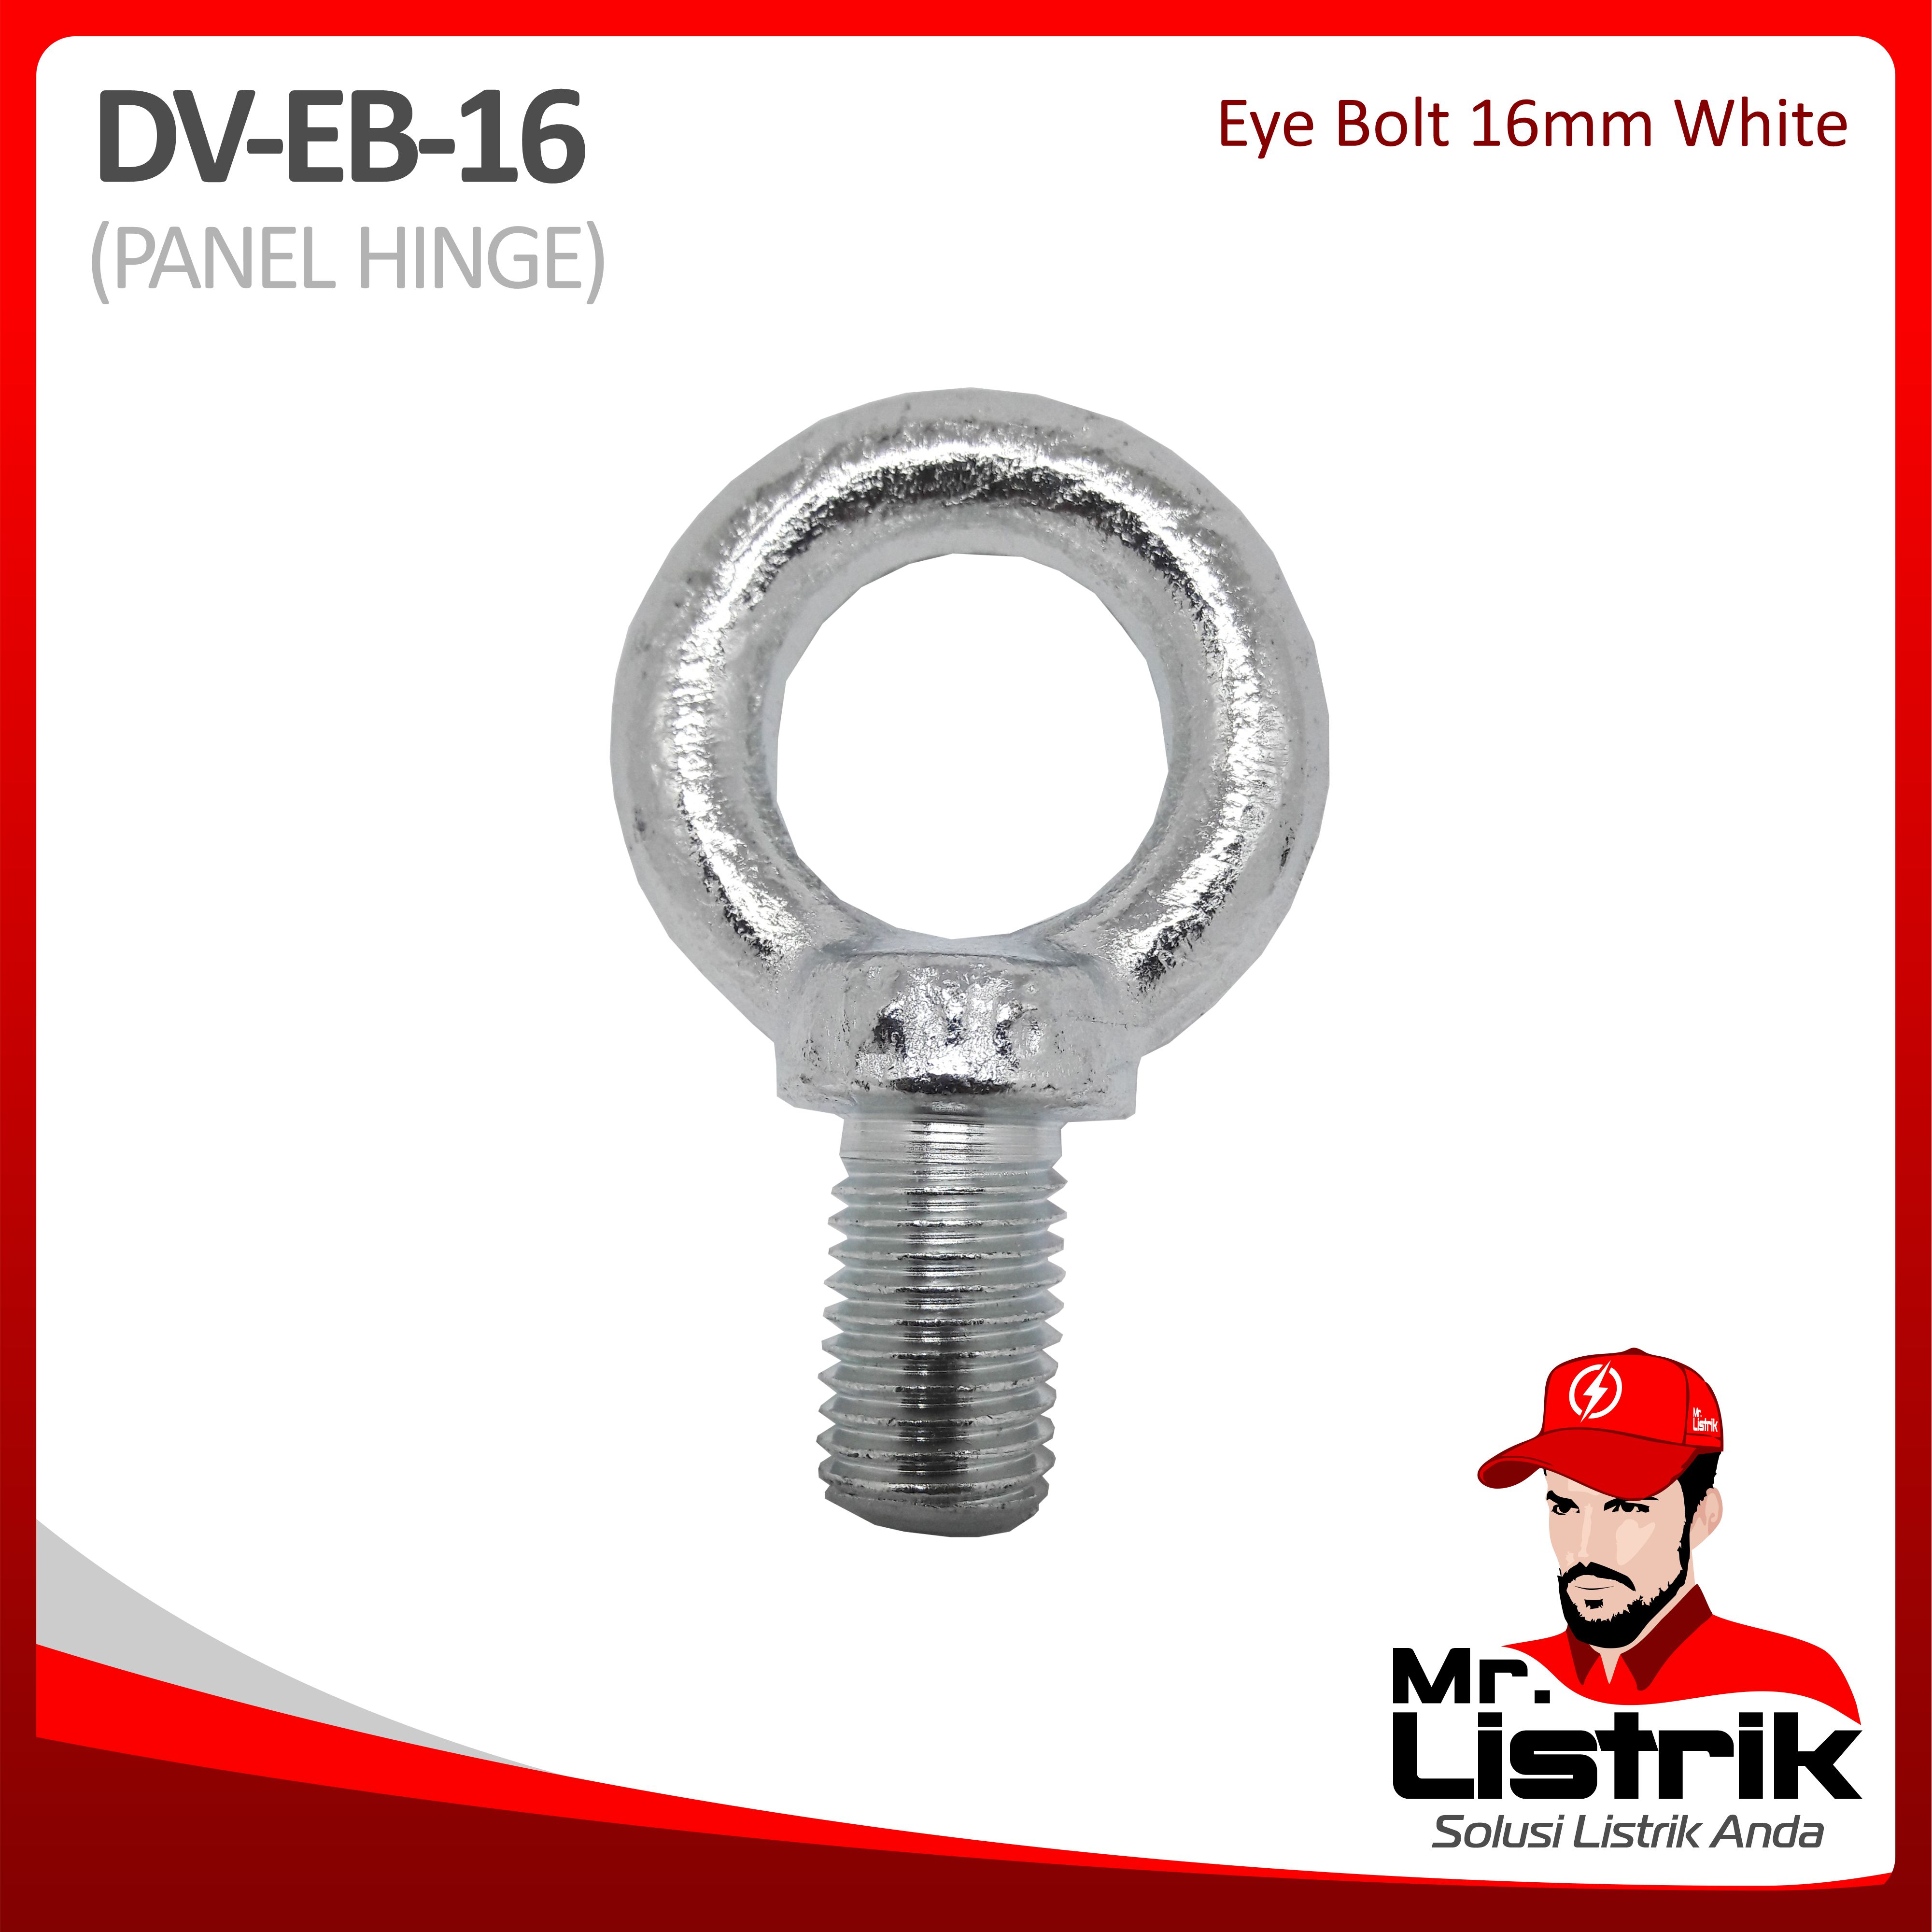 Eye Bolt 16mm White DV EB-16